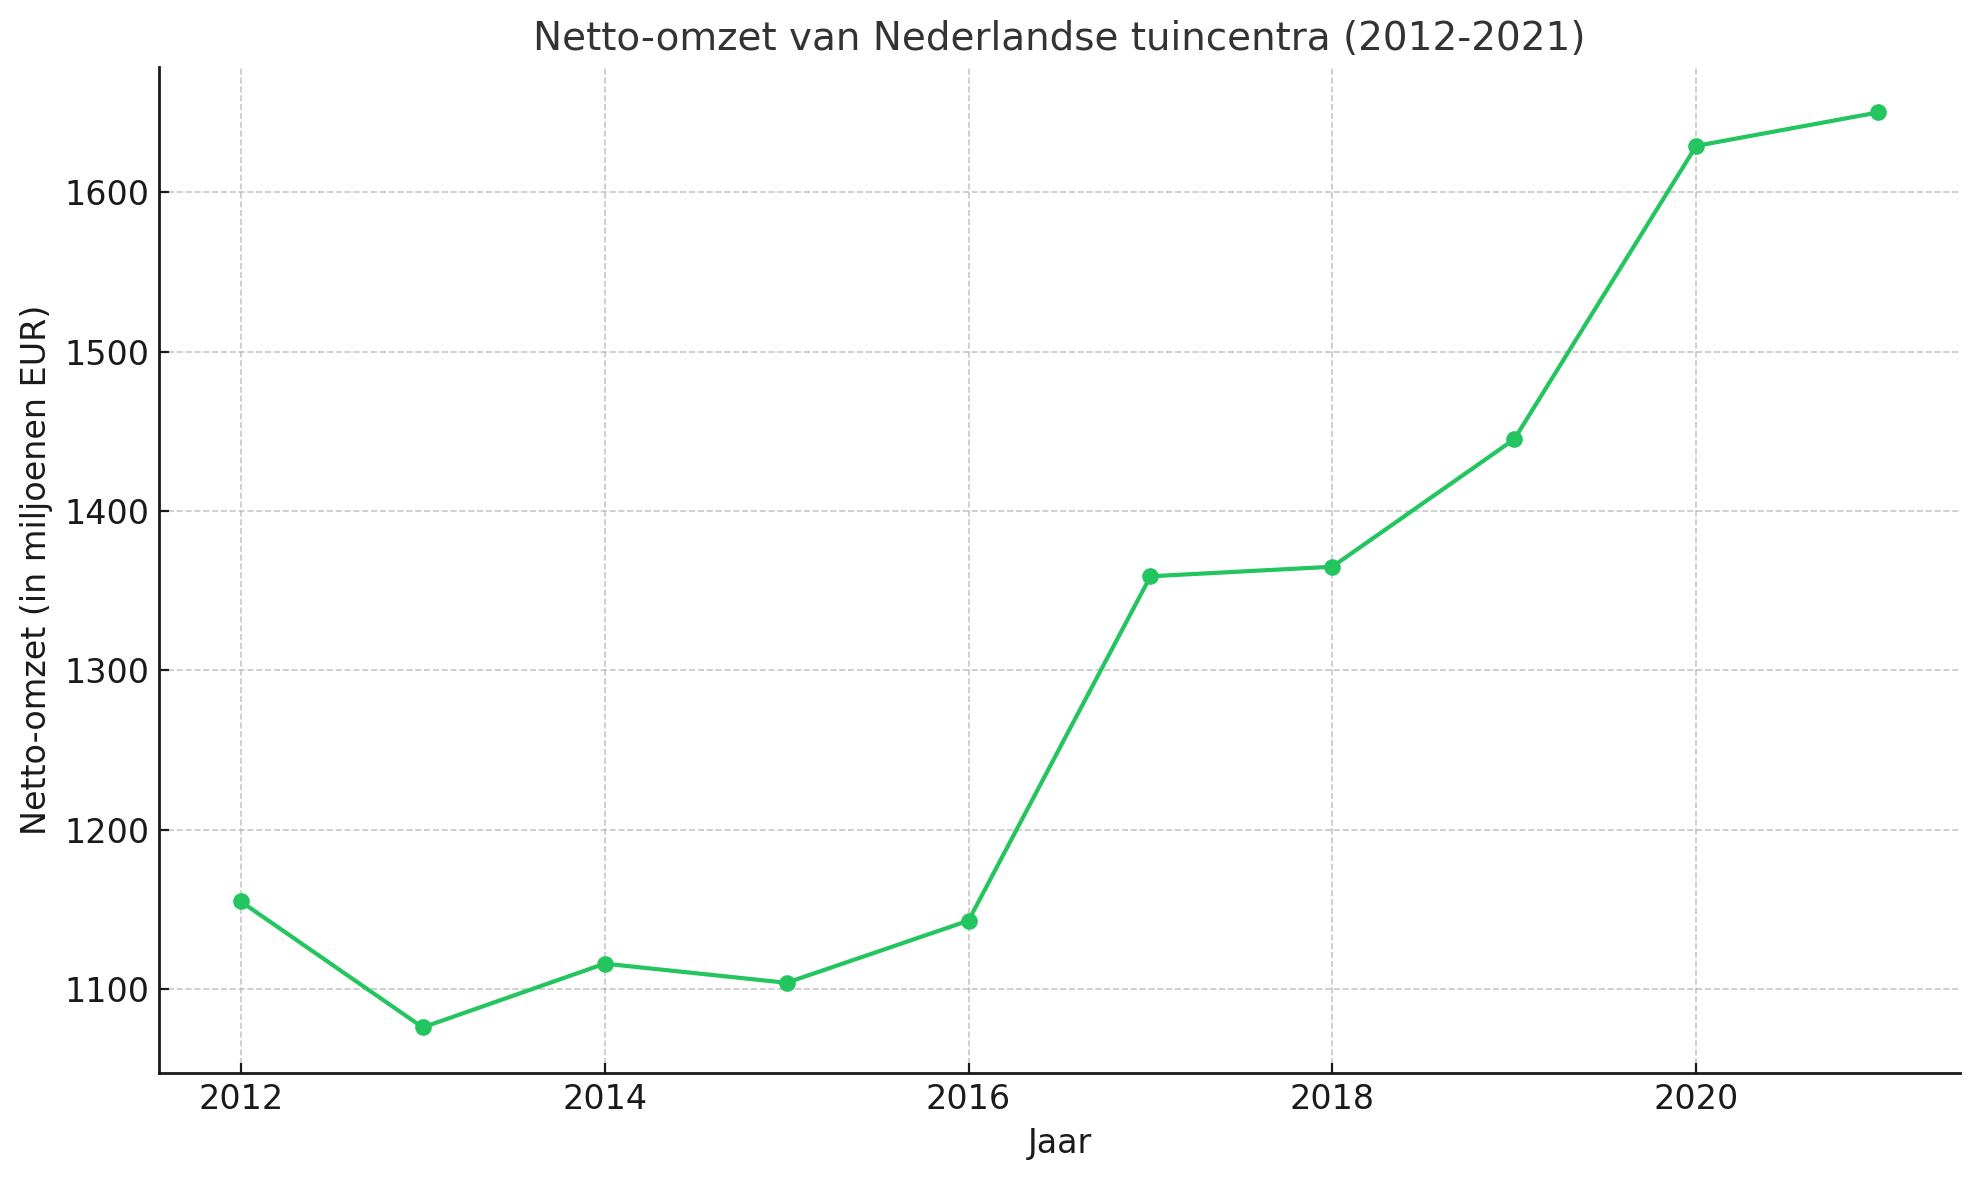 Netto omzet van tuincentra in Nederland